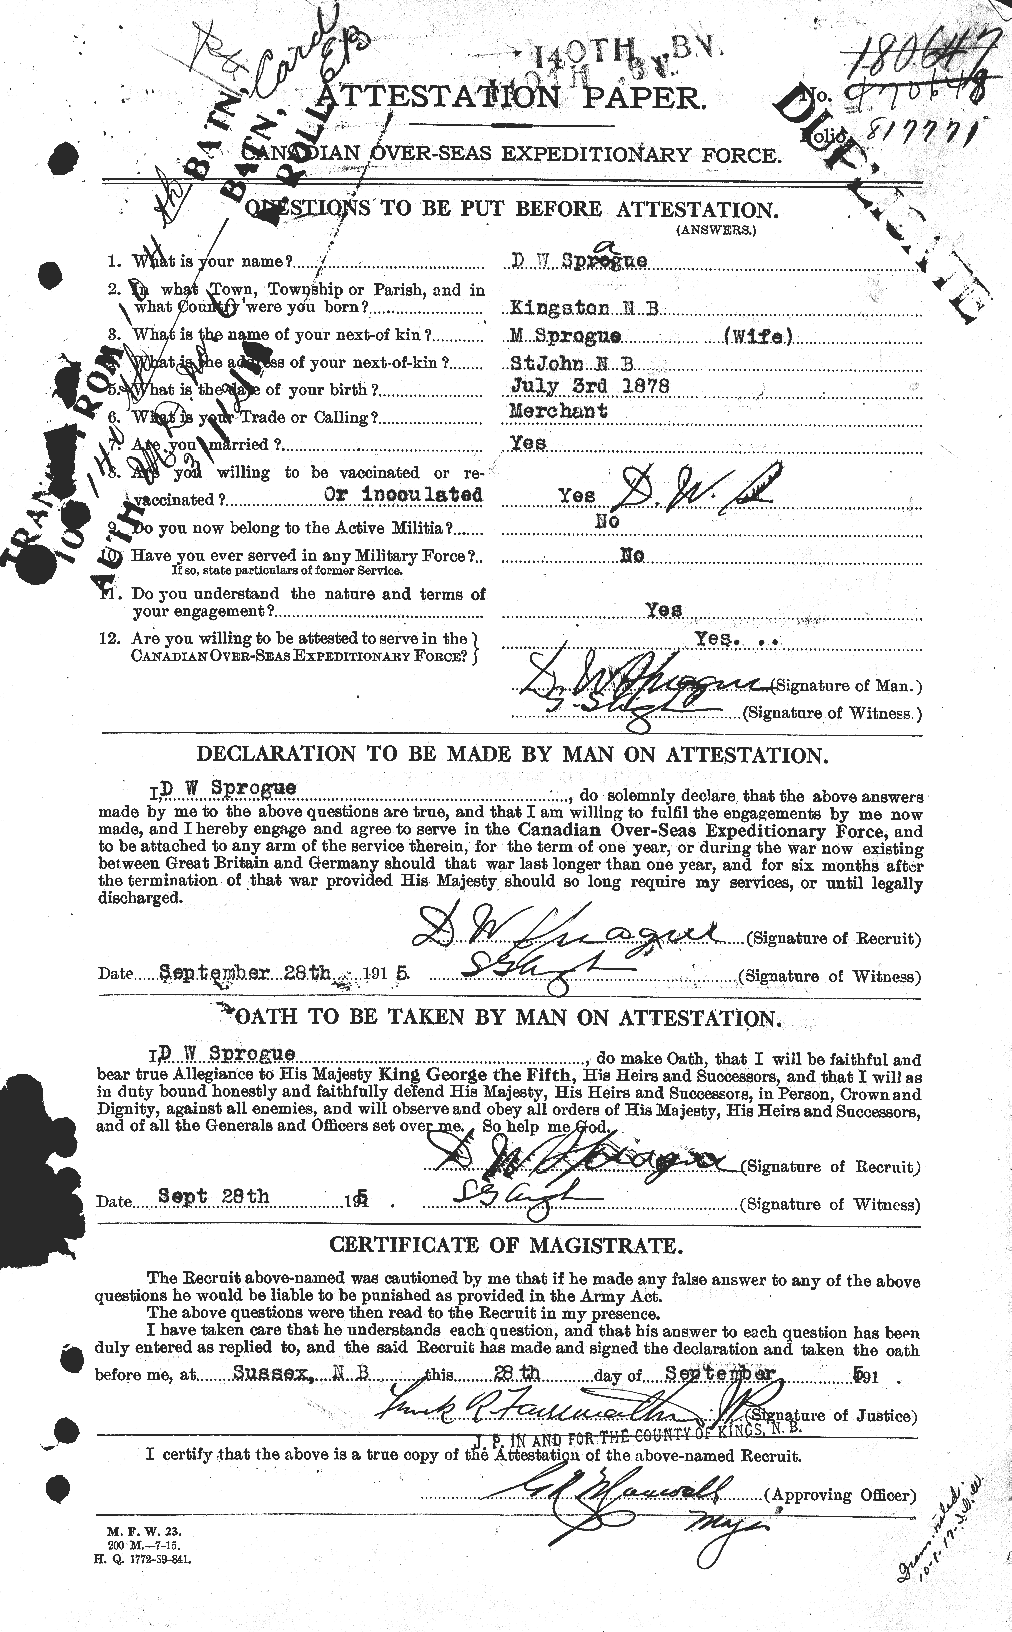 Dossiers du Personnel de la Première Guerre mondiale - CEC 621460a